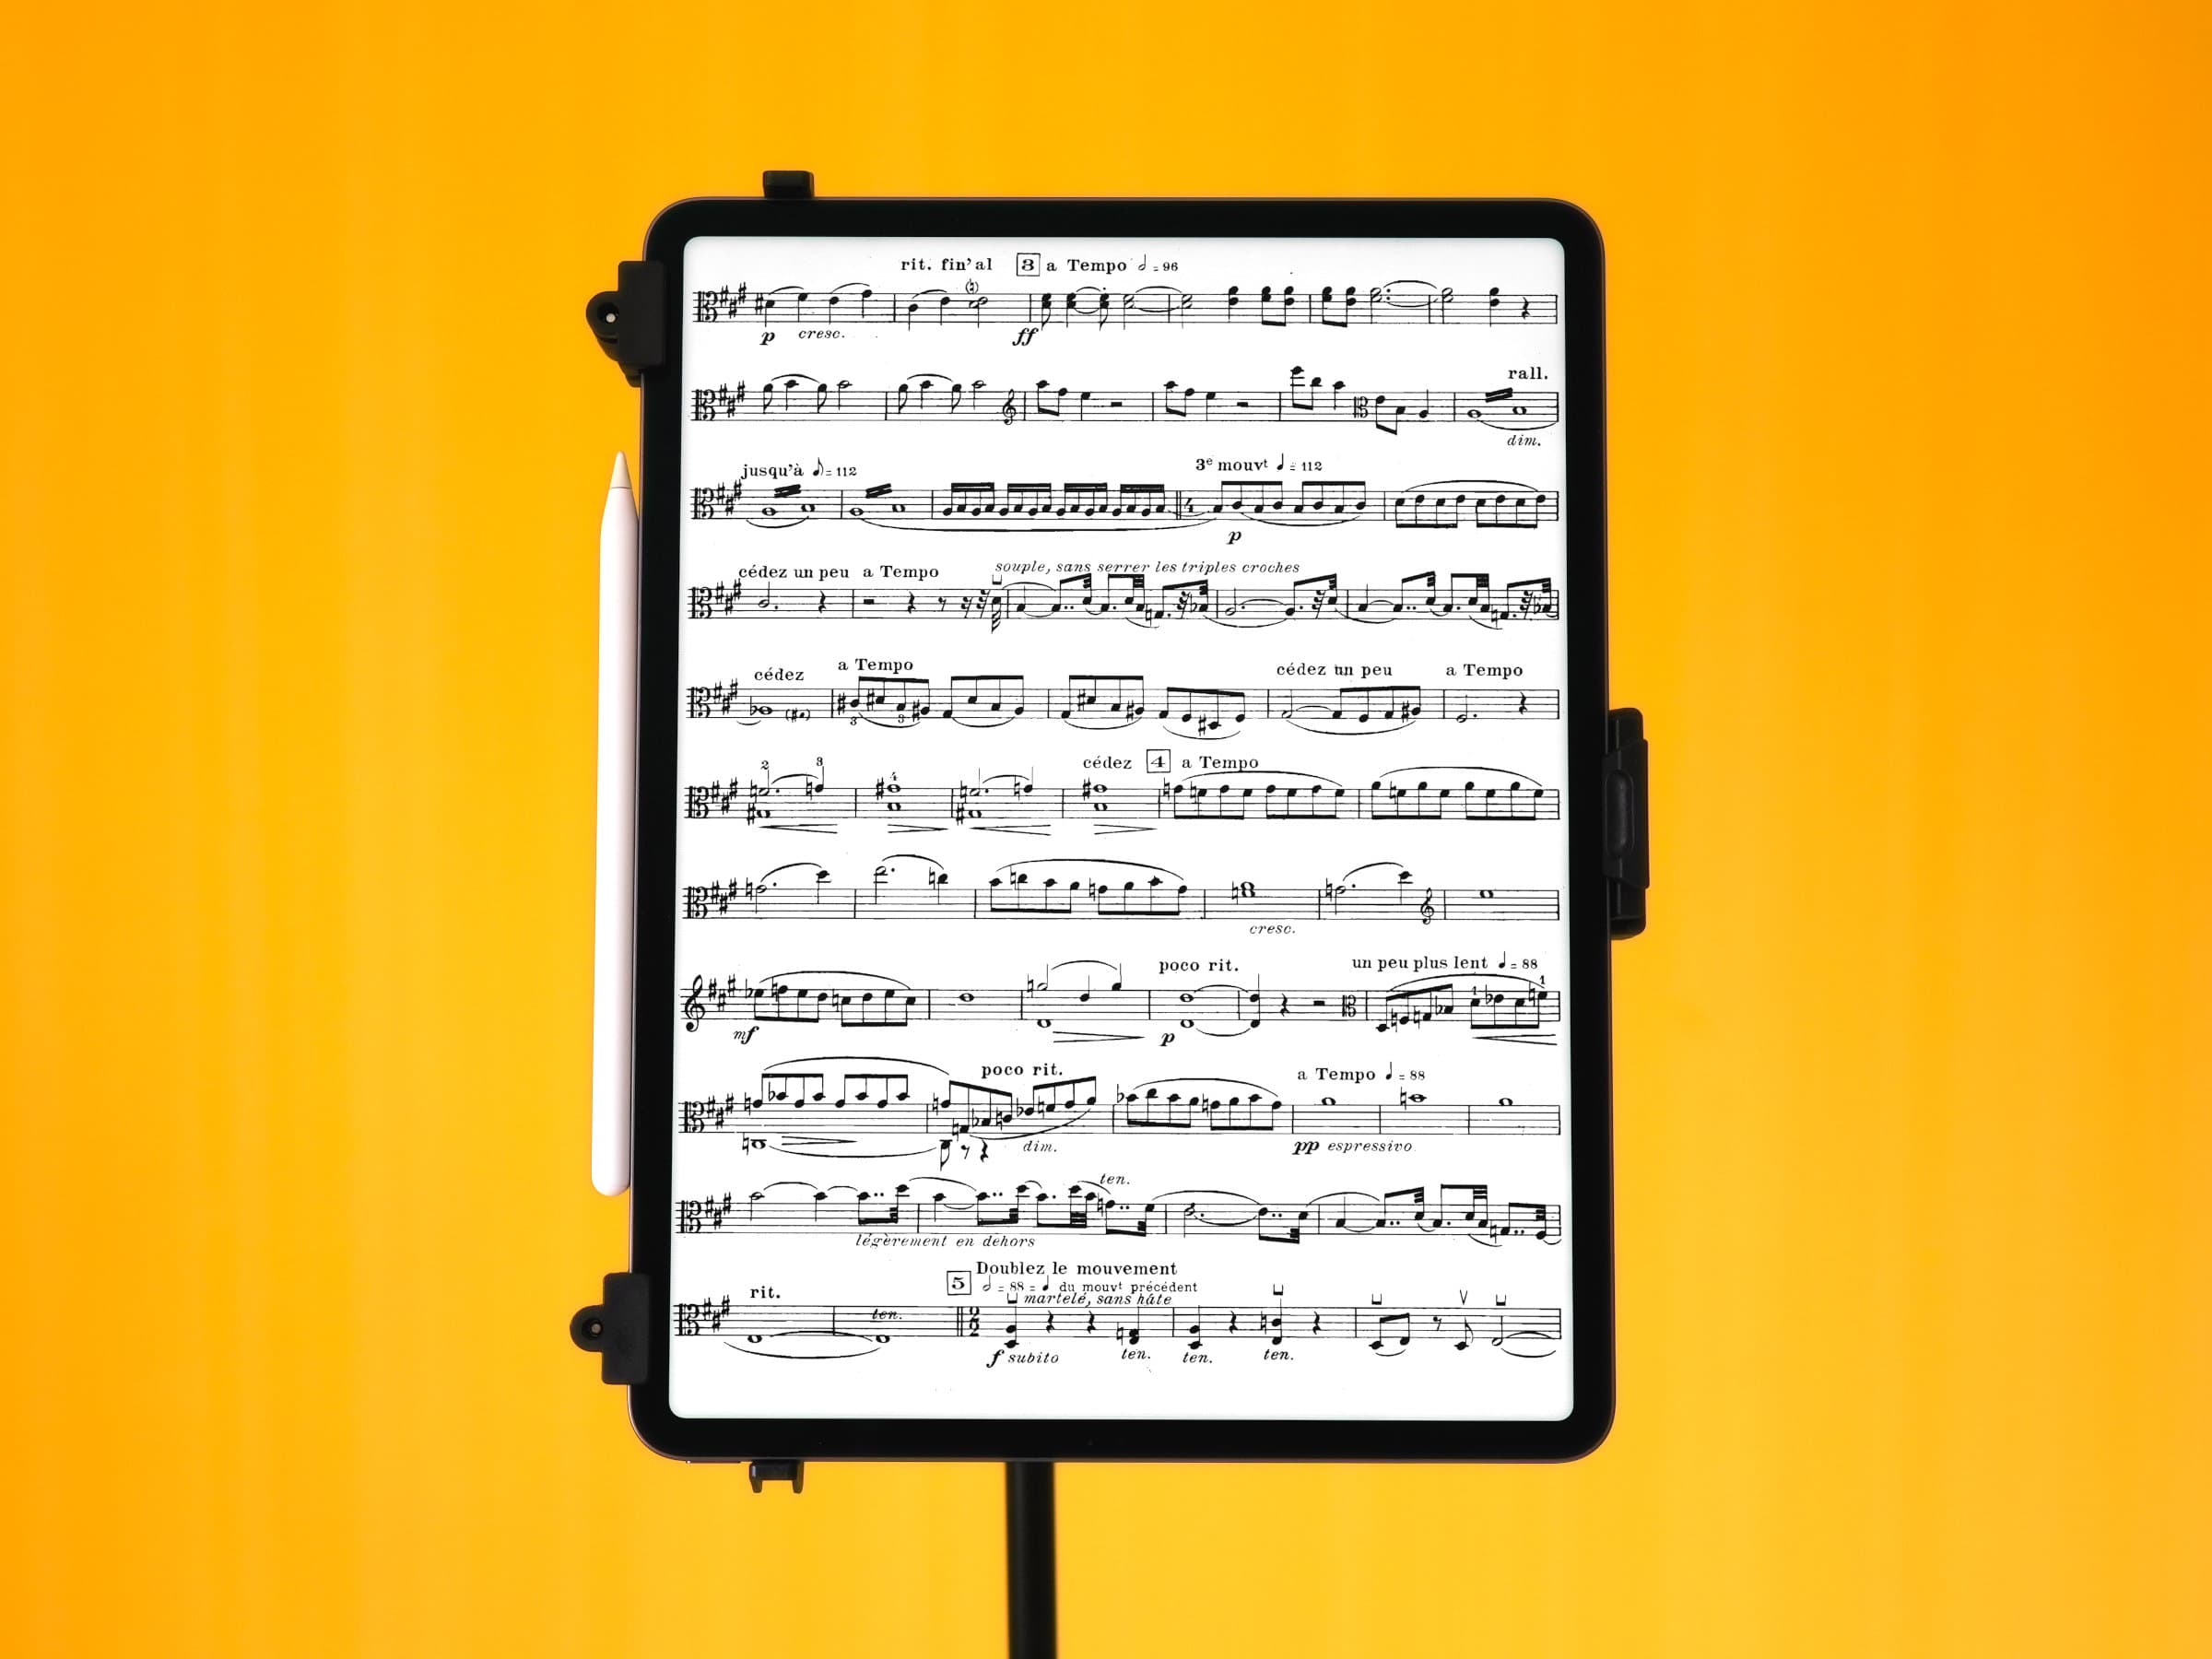 Partitura de música en un iPad Pro de 12,9 pulgadas